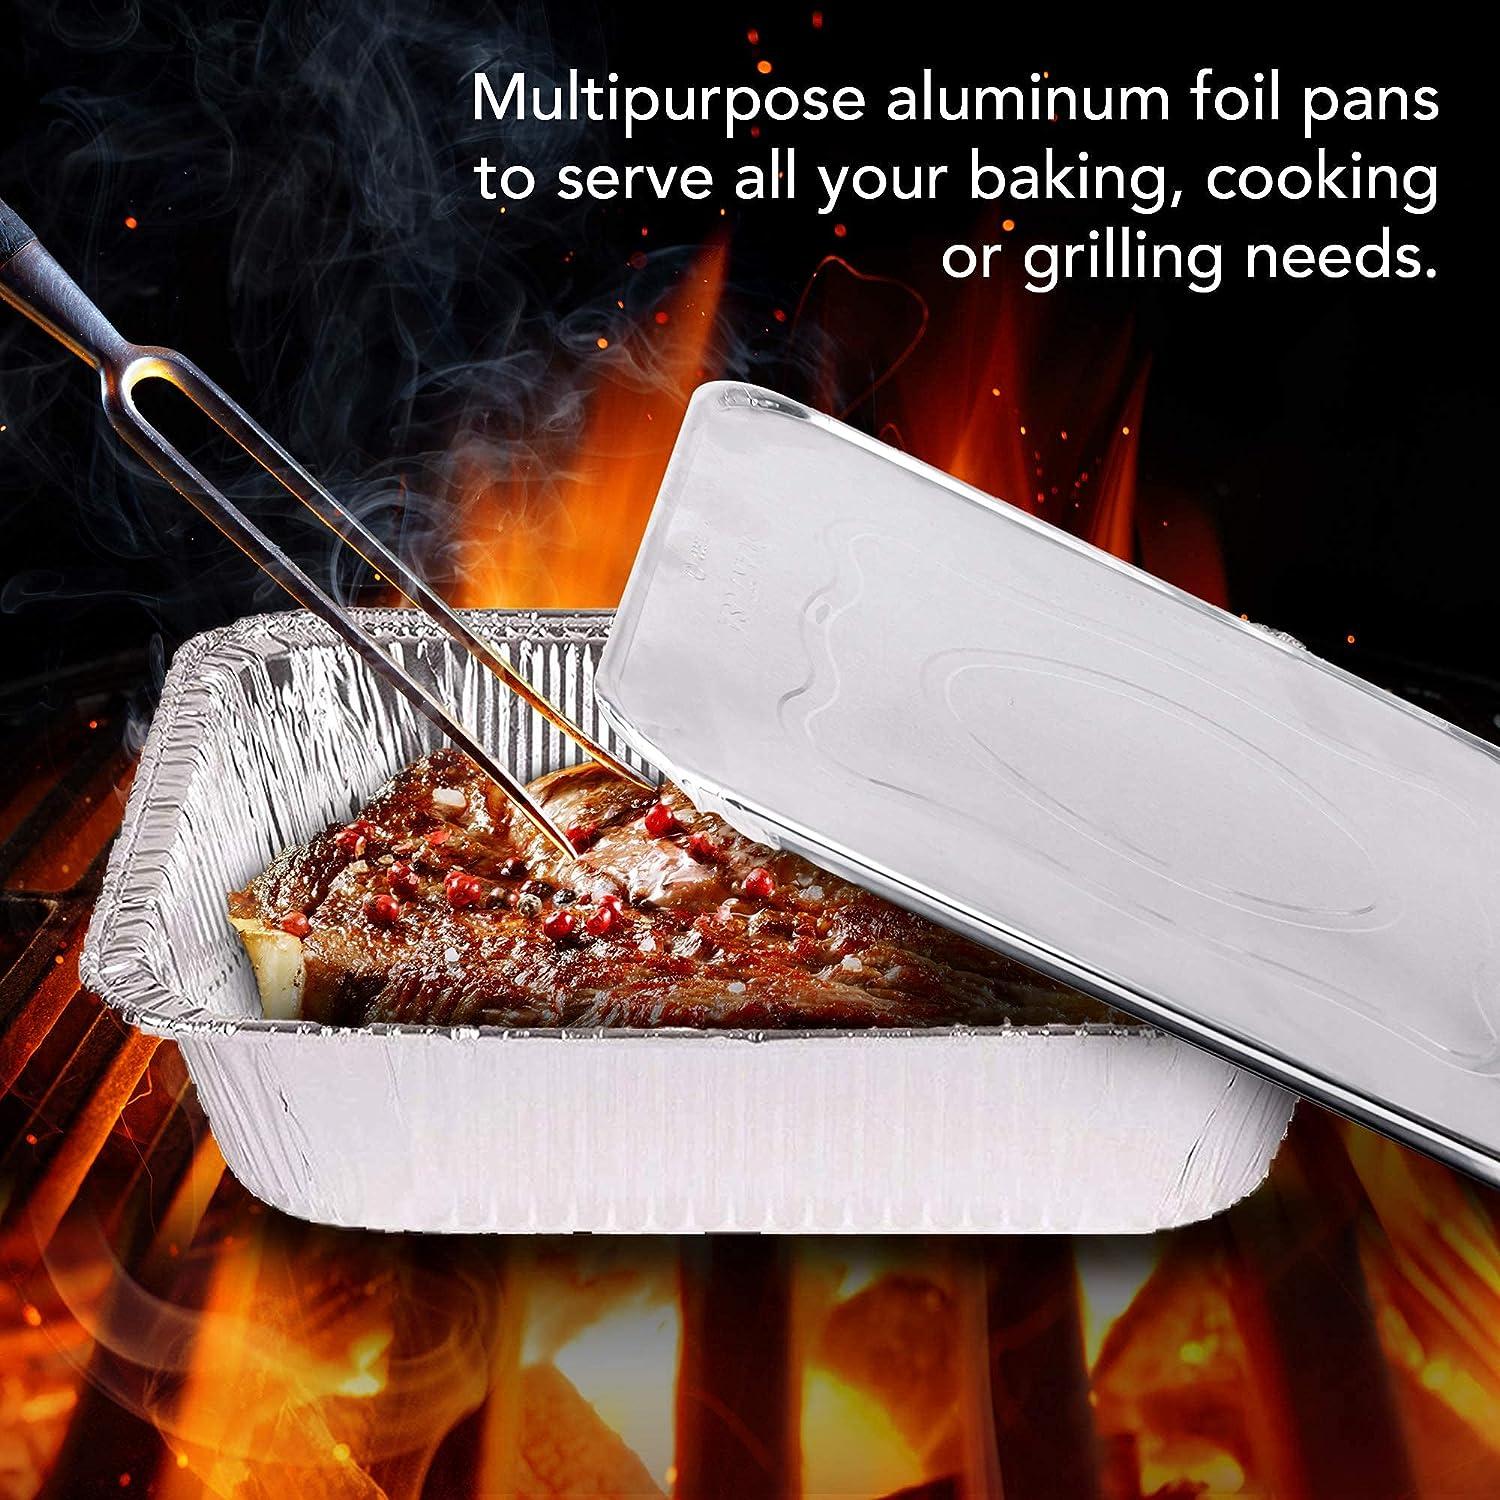 Aluminum Pans 9x13 Disposable Foil Baking Pans (100 Pack) - Half